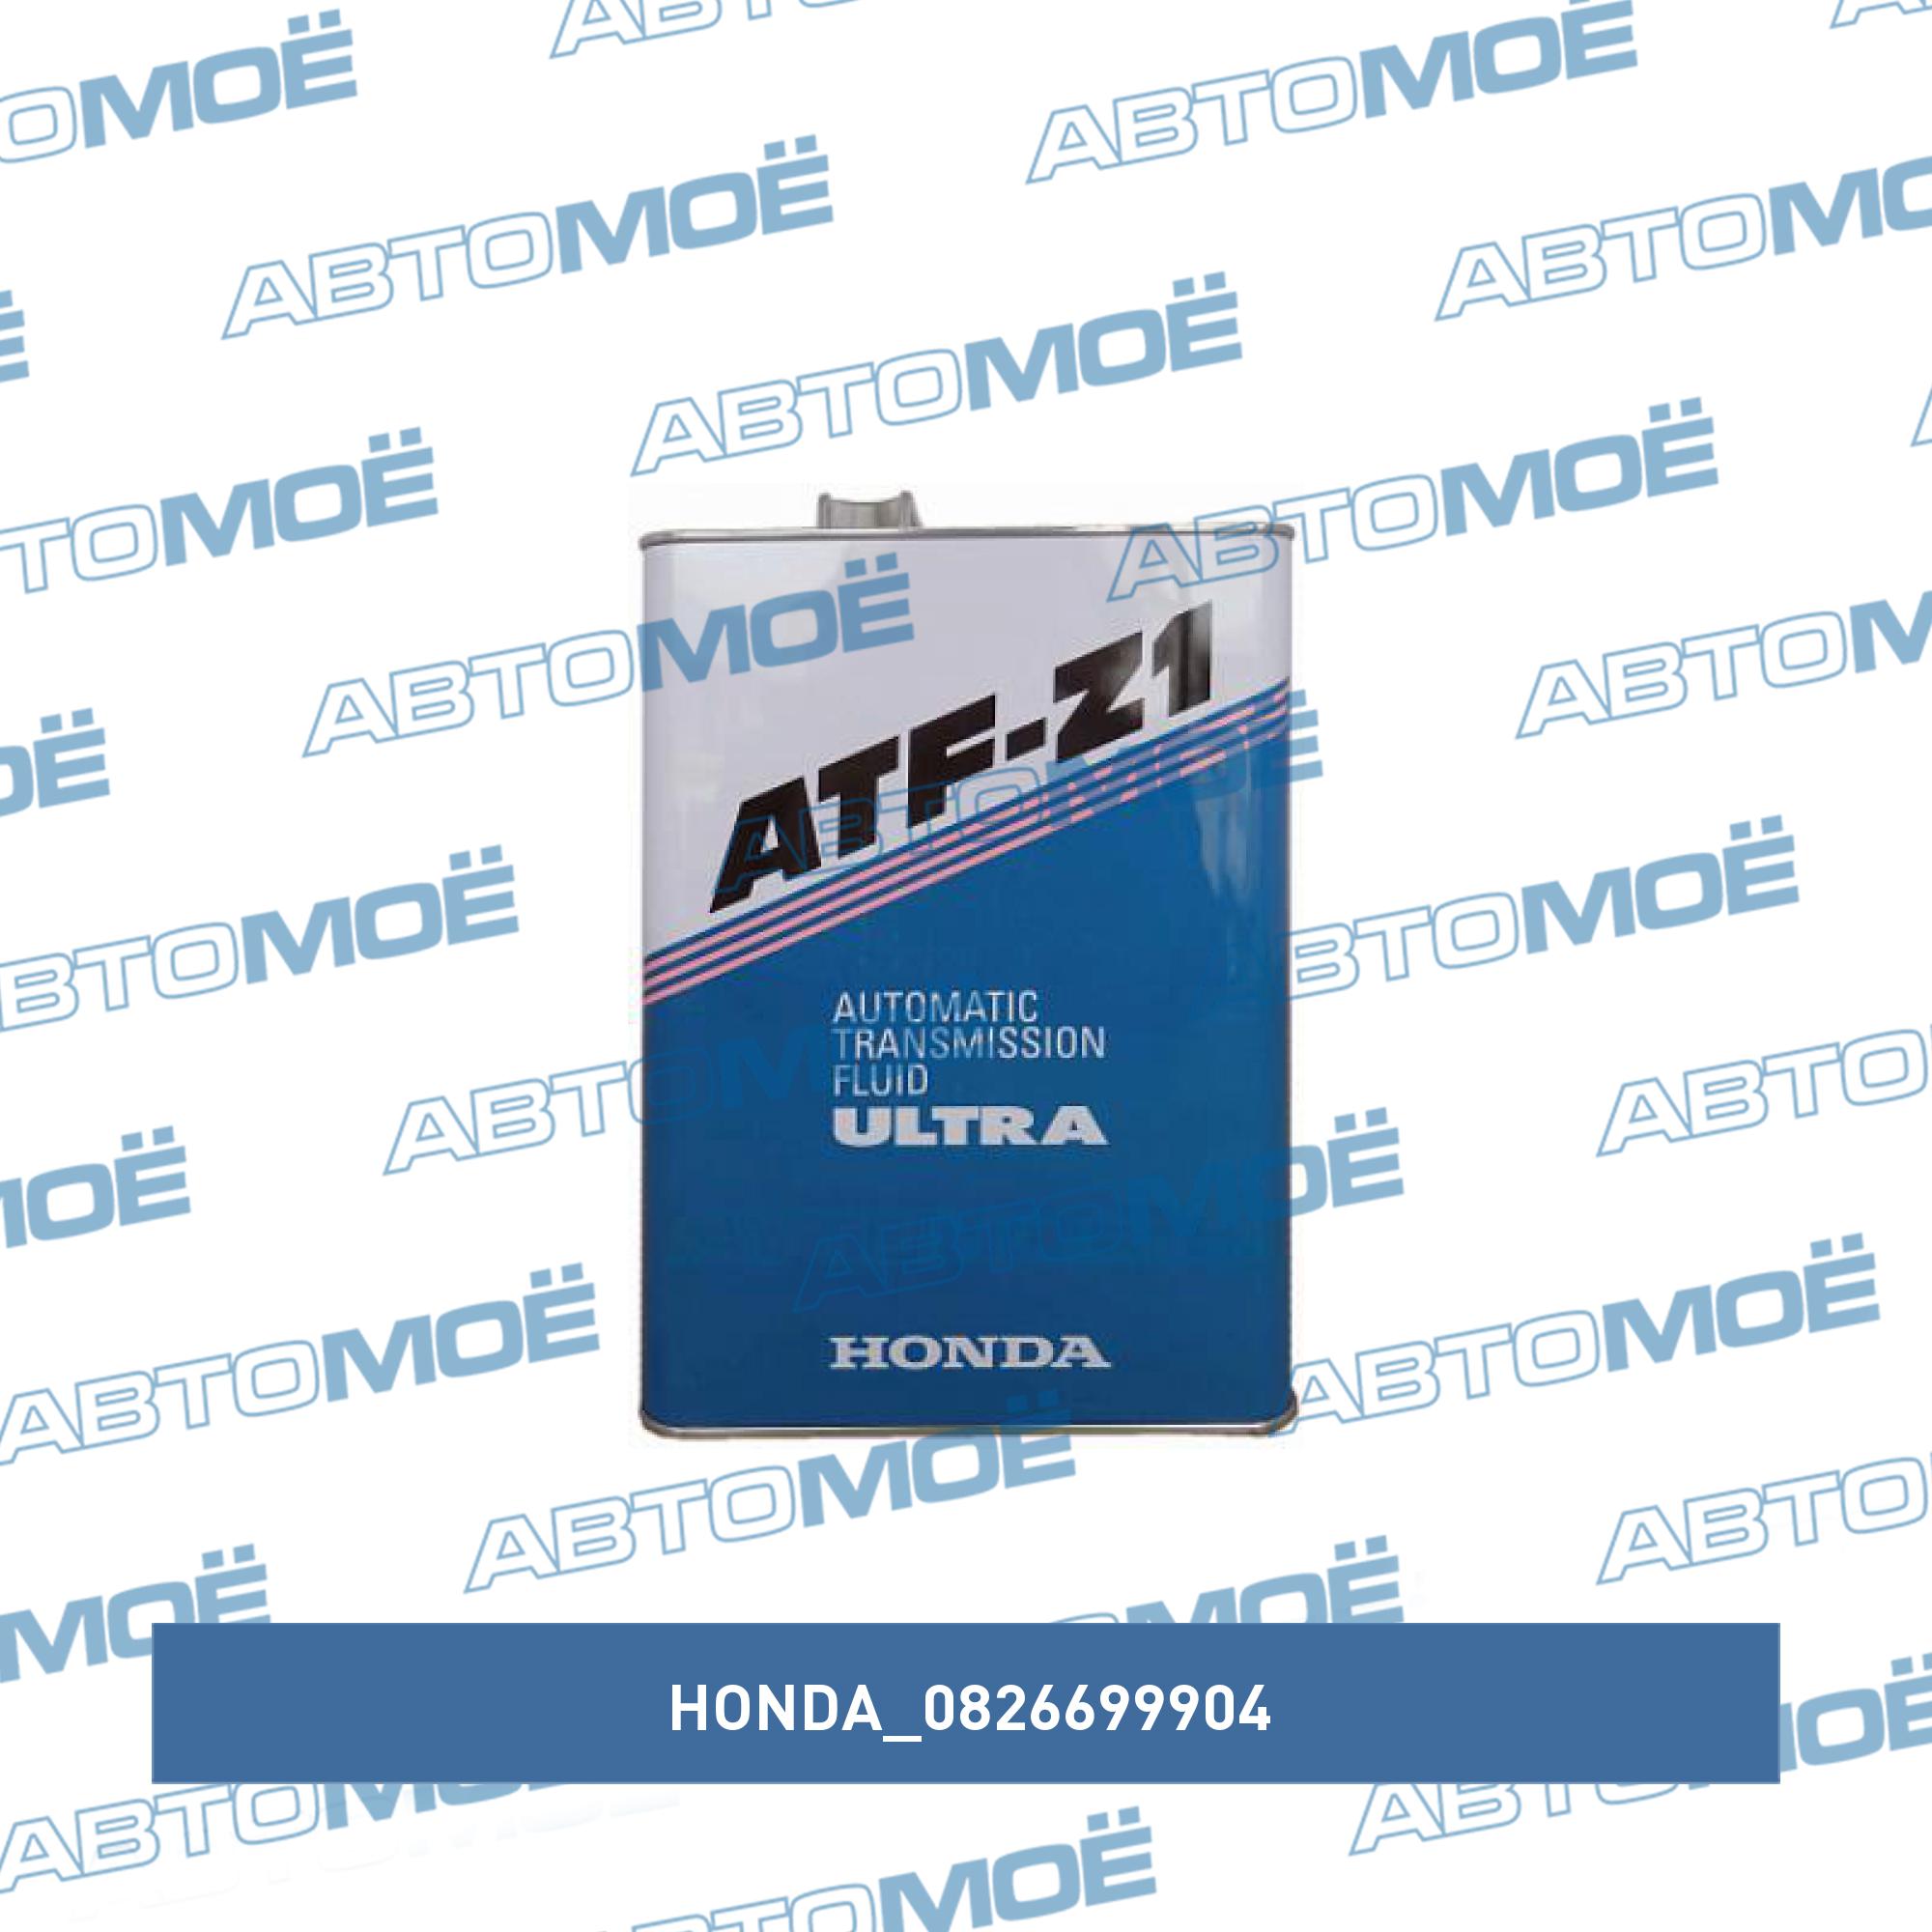 Масло трансмиссионное Honda ATF-Z1 4л HONDA 0826699904